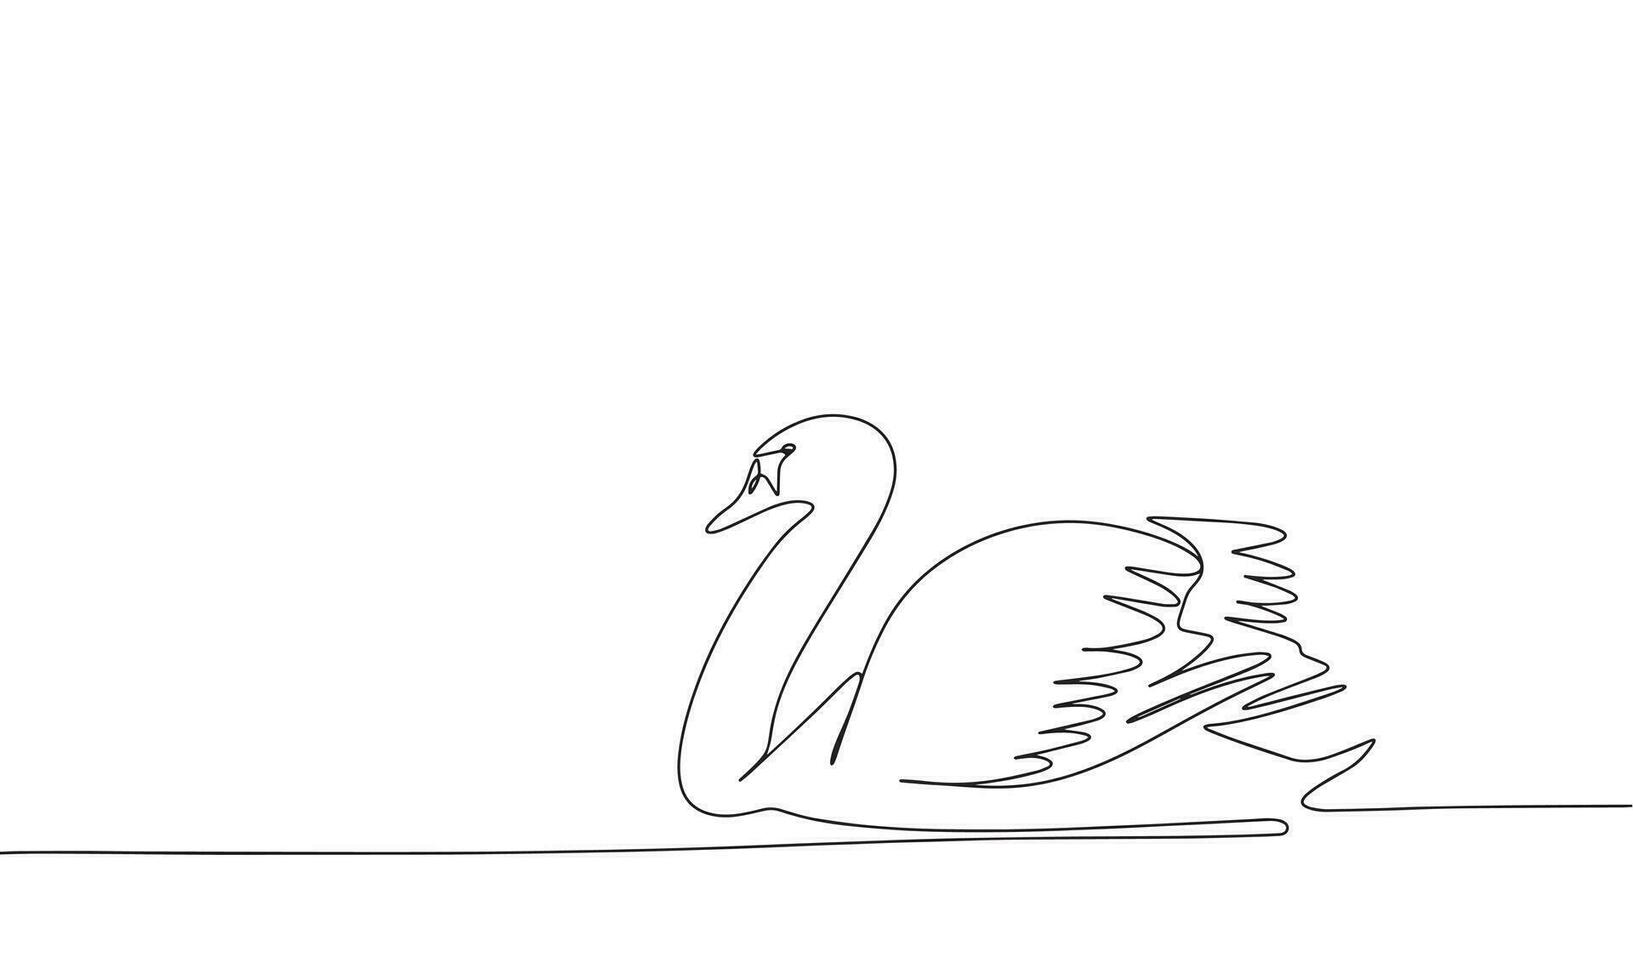 kontinuerlig linje teckning av svan. vektor illustration som linje konst översikt tapet för minimal affisch, mall, baner